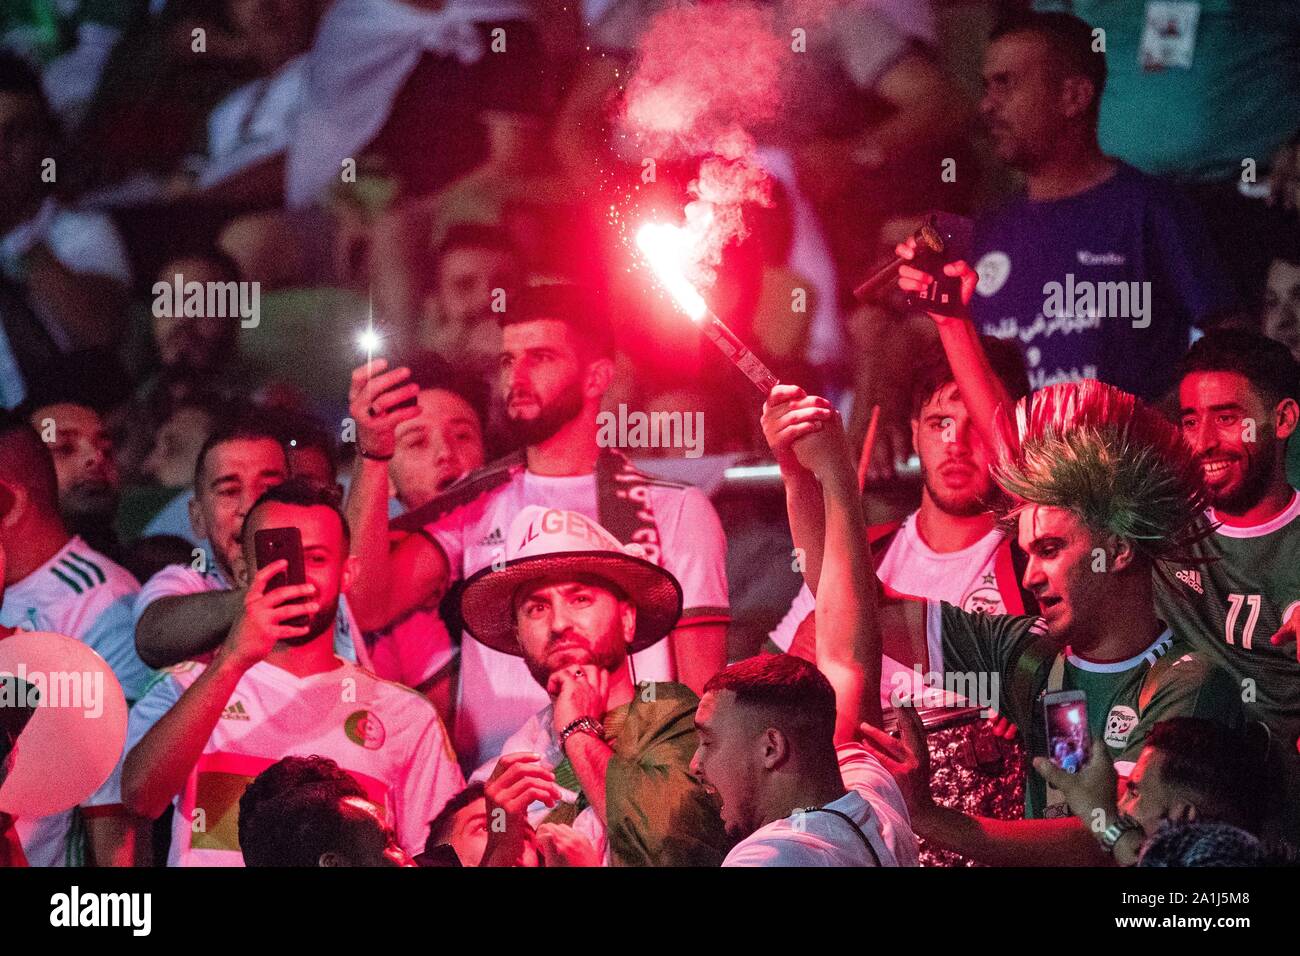 Kairo, Ägypten - 23. Juni: Algerien fans off Flares während der 2019 Afrika Cup Gruppe C Match zwischen Algerien und Kenia am 30. Juni Stadion o Stockfoto